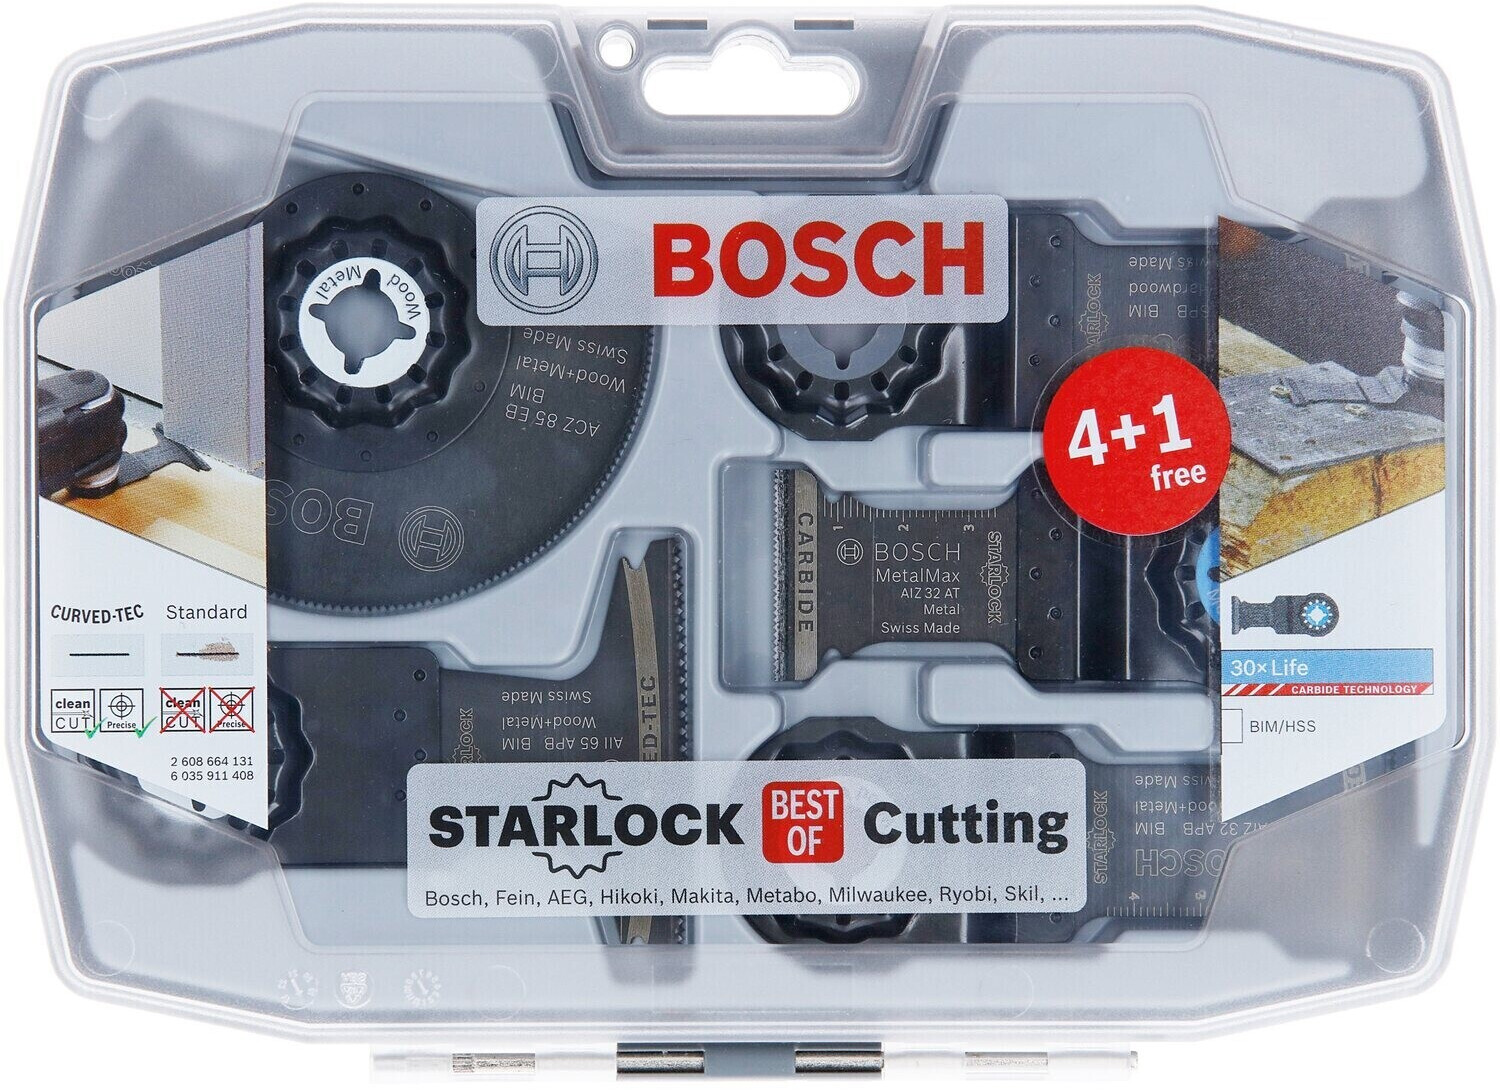 Bosch Starlock Best of | Preisvergleich € ab 40,08 (5tlg.) Cutting bei